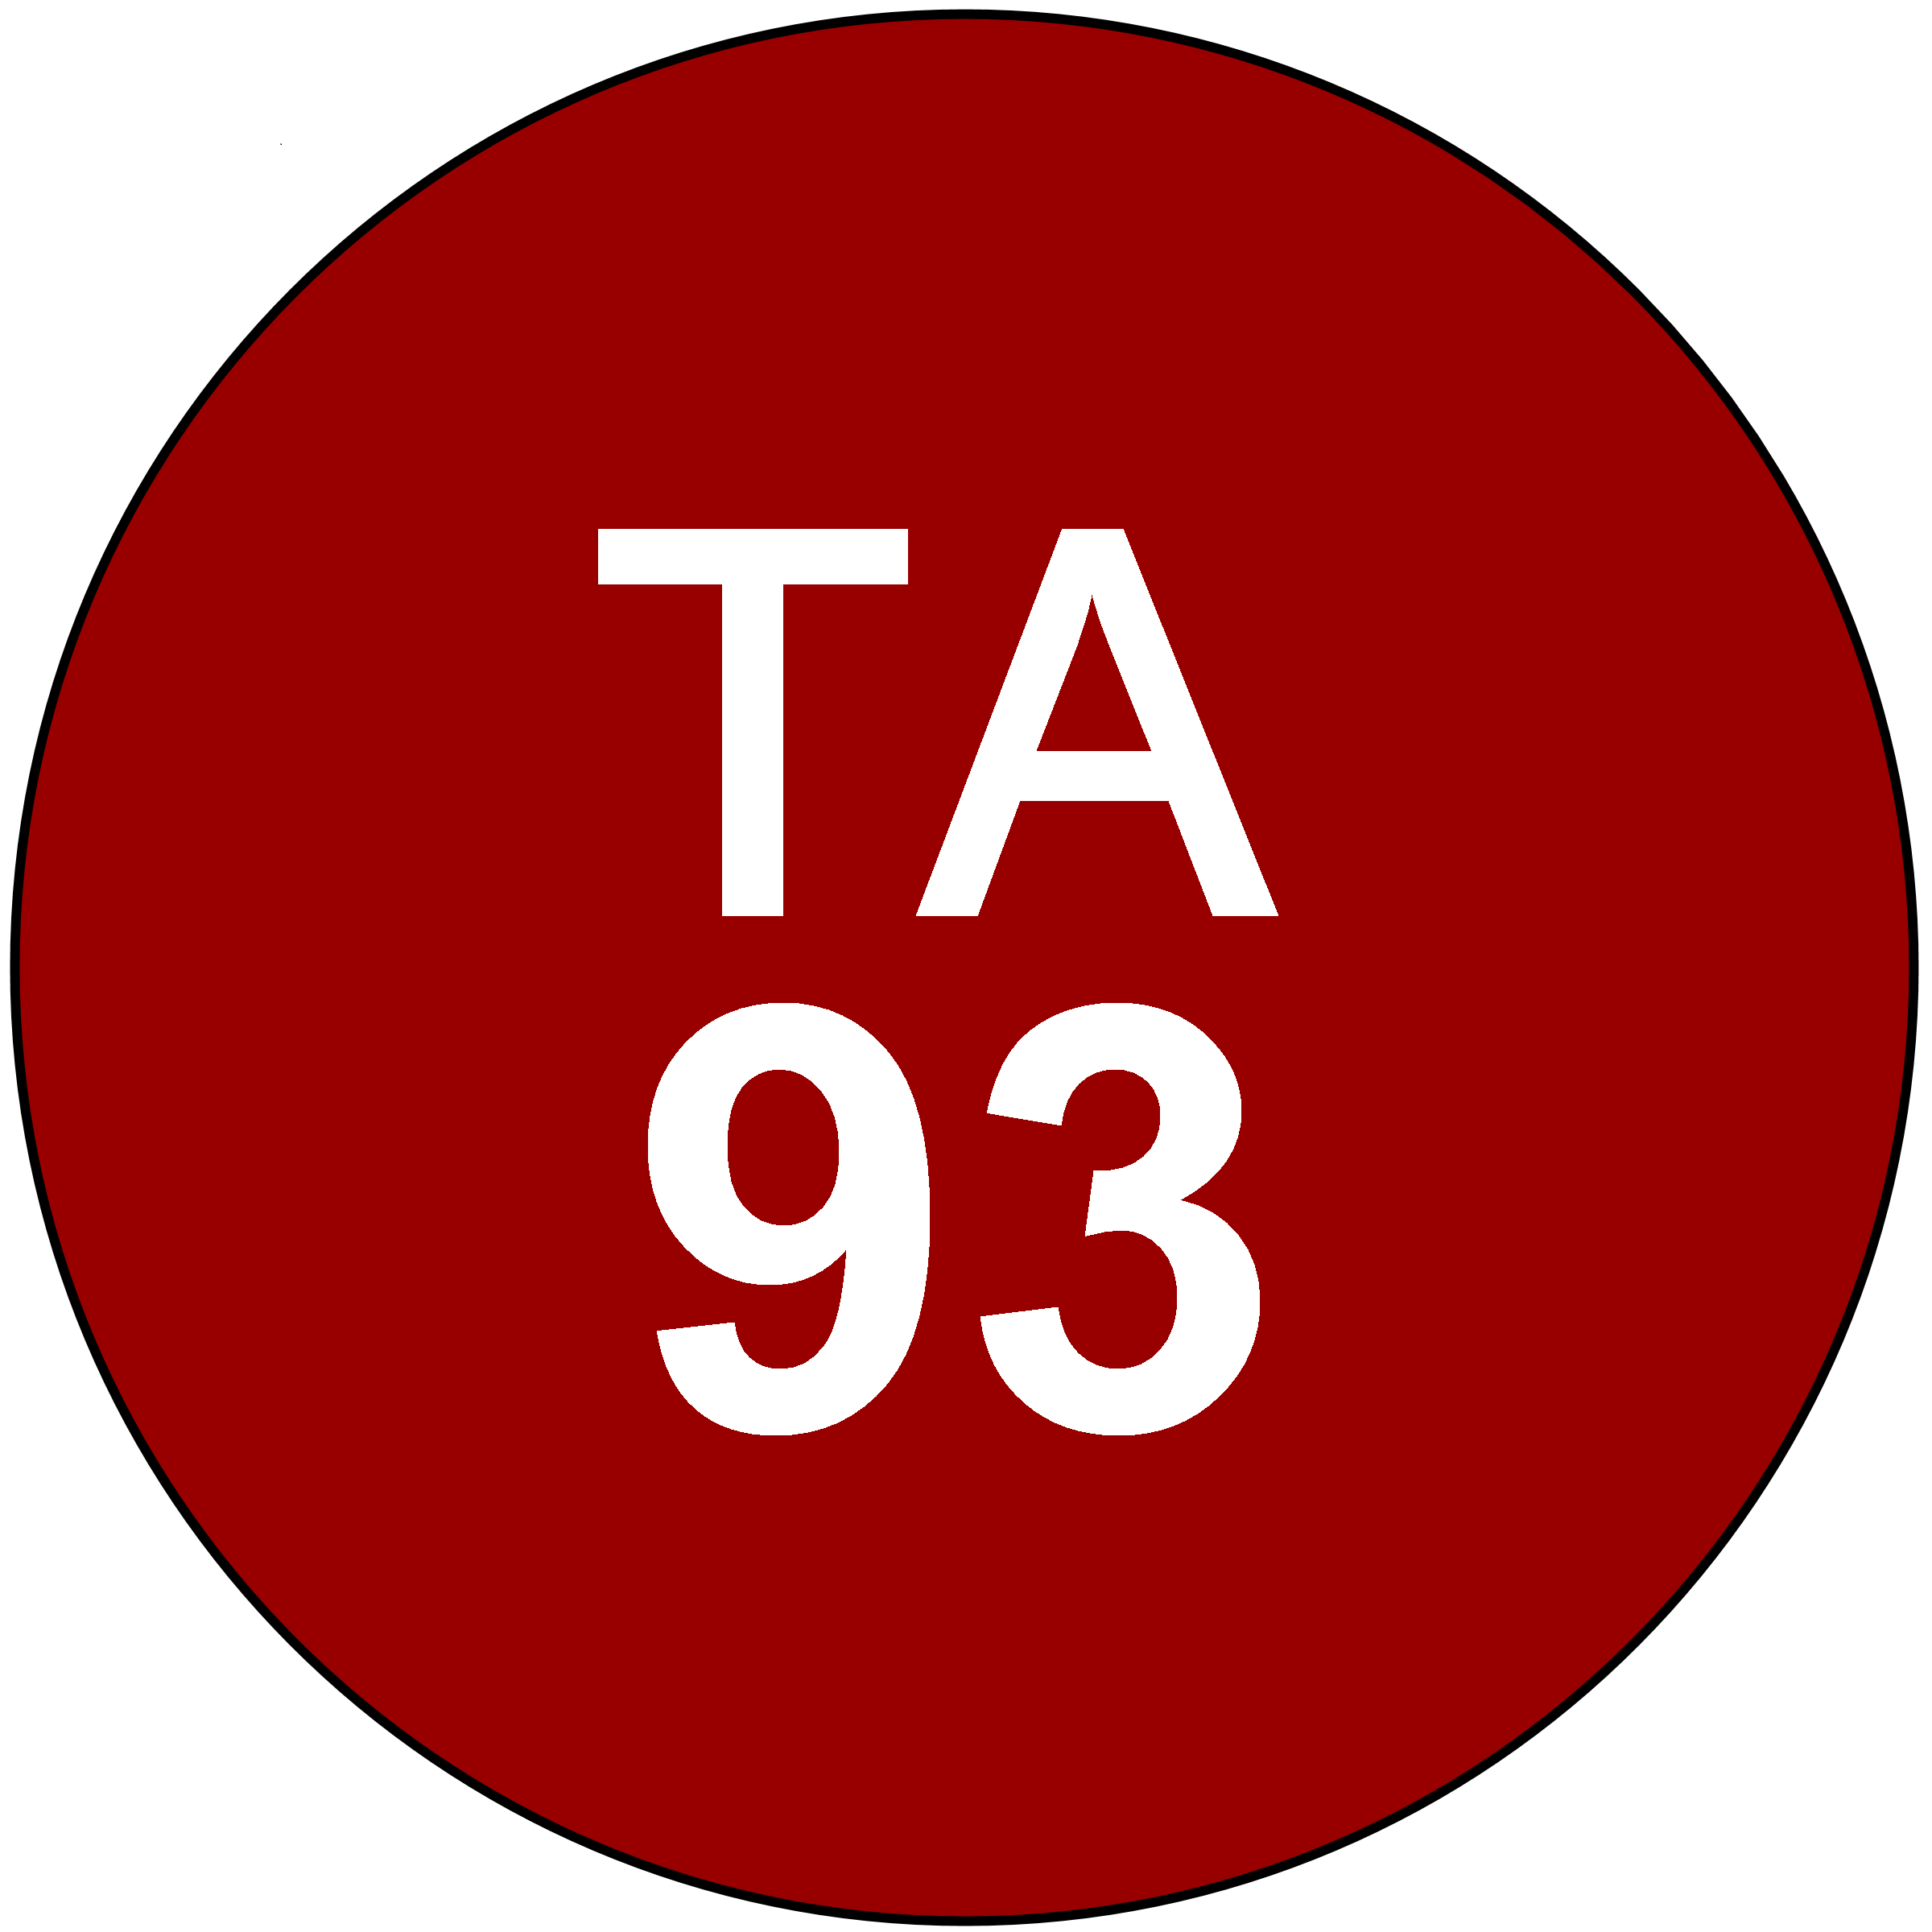 ta93